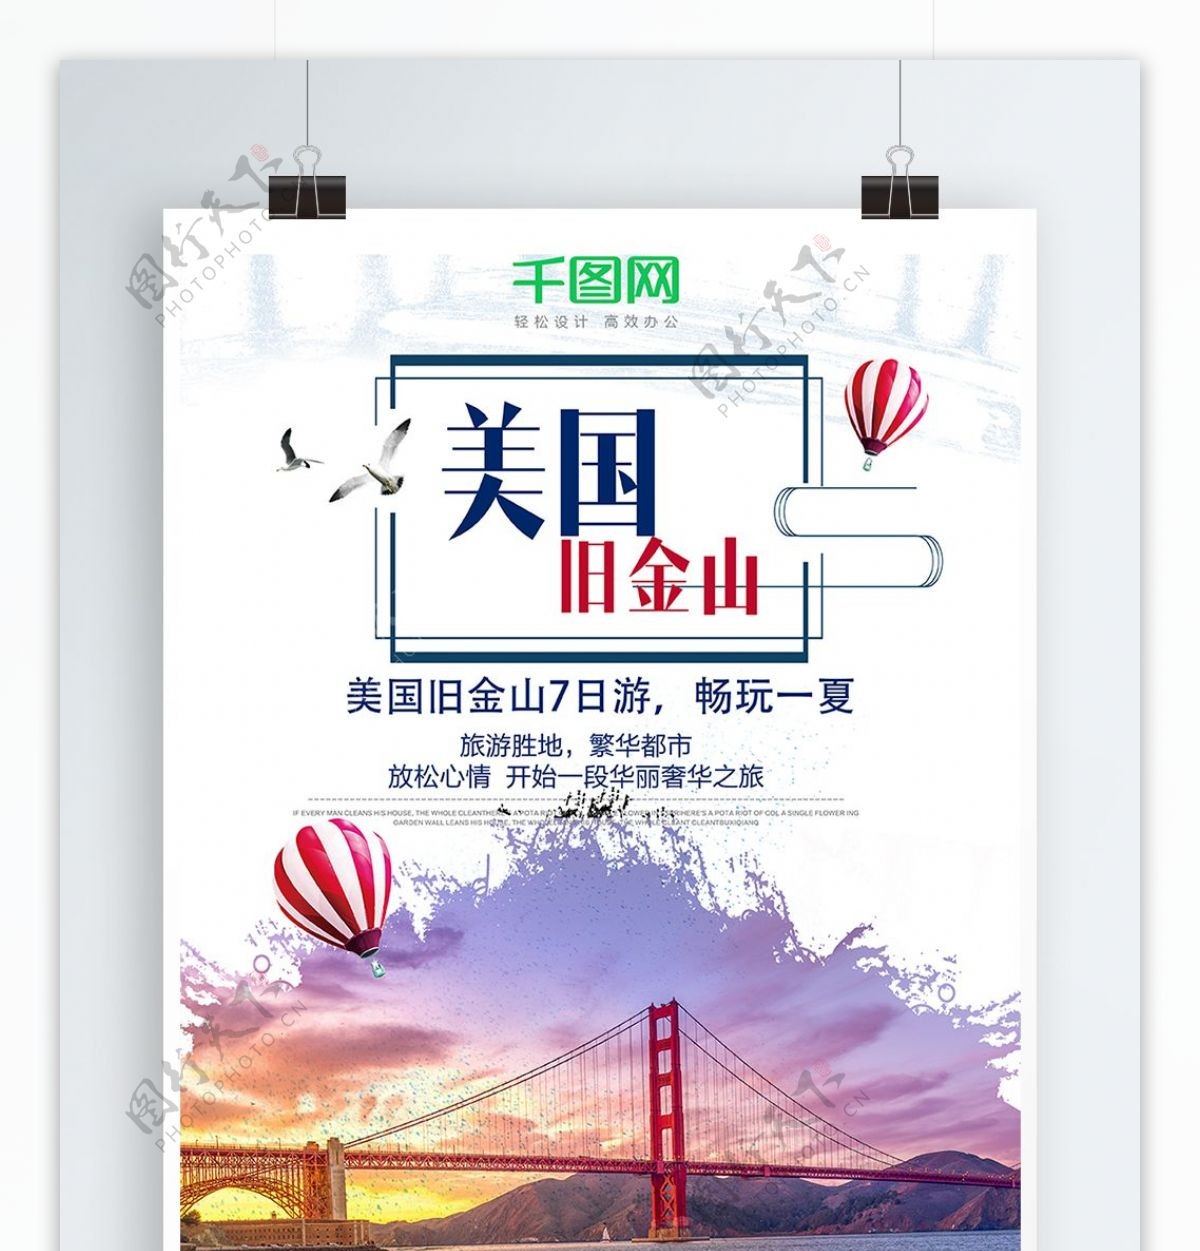 美国旧金山旅游海报